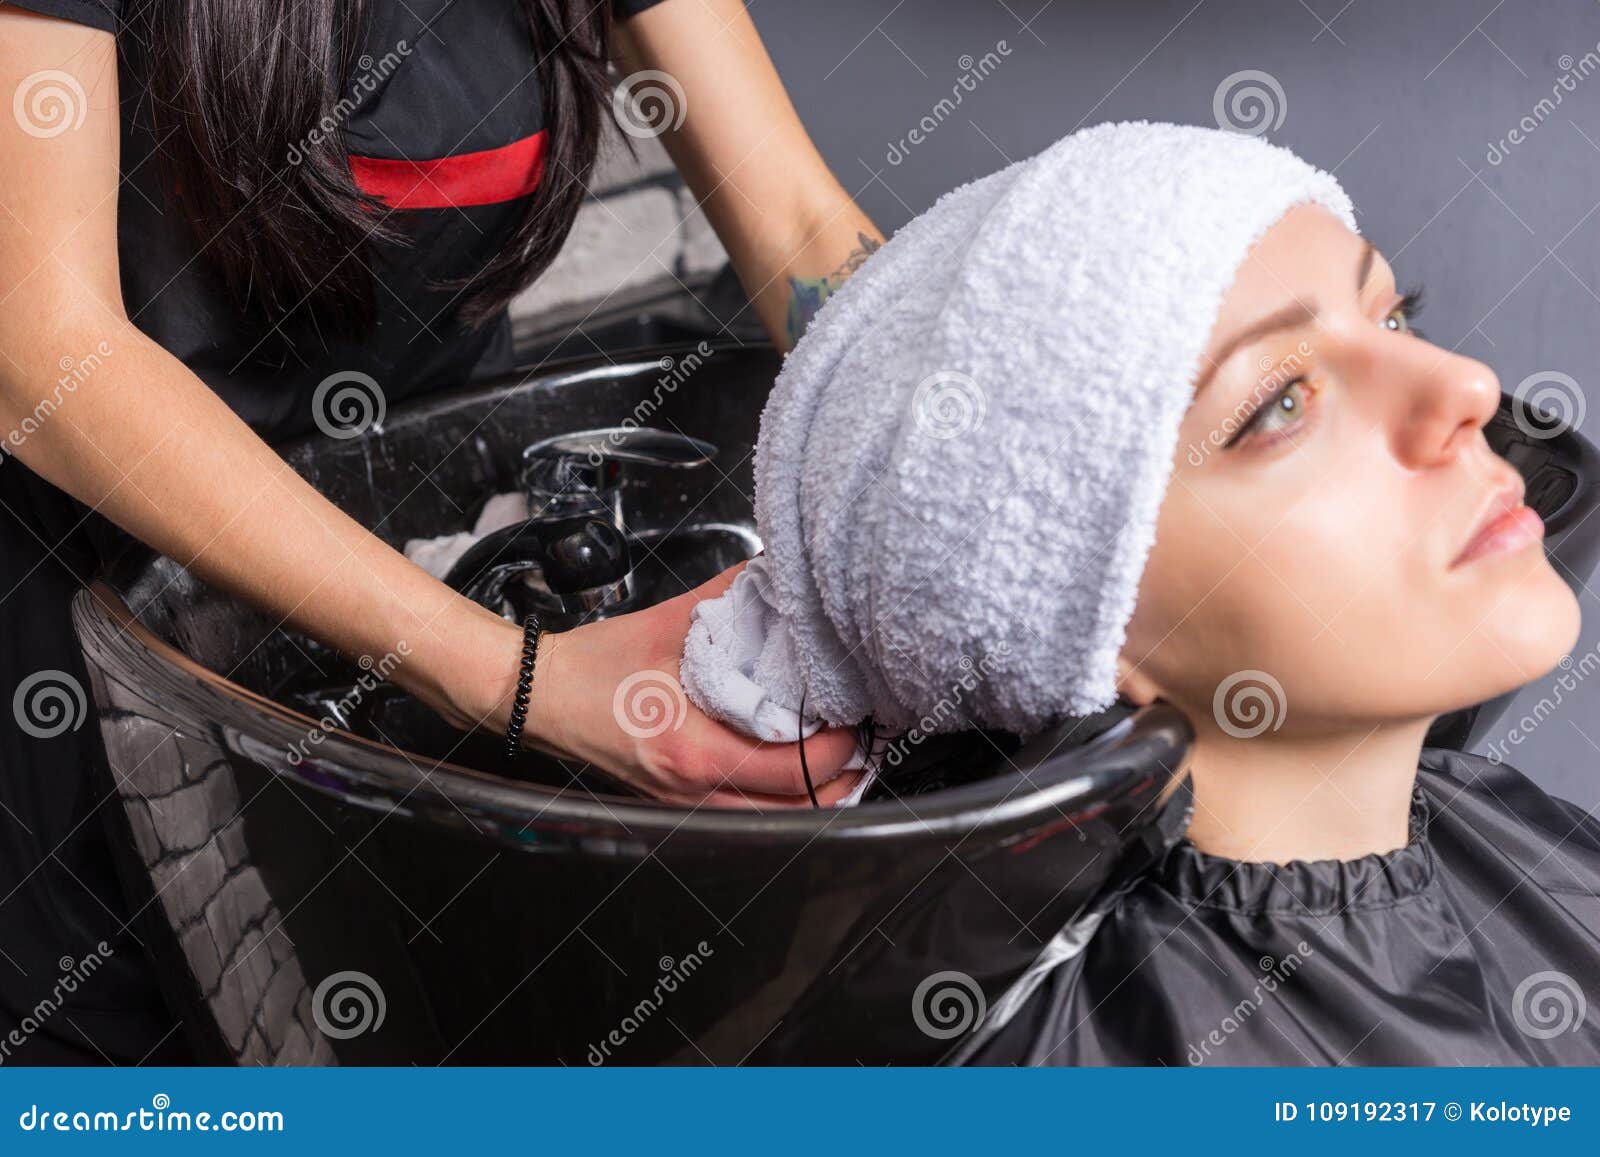 Полотенцем после мытья. Полотенца с девушкой в парикмахерской. Клиент в парикмахерской в полотенце. Полотенце для мытья волос. Полотенце для сушки волос.